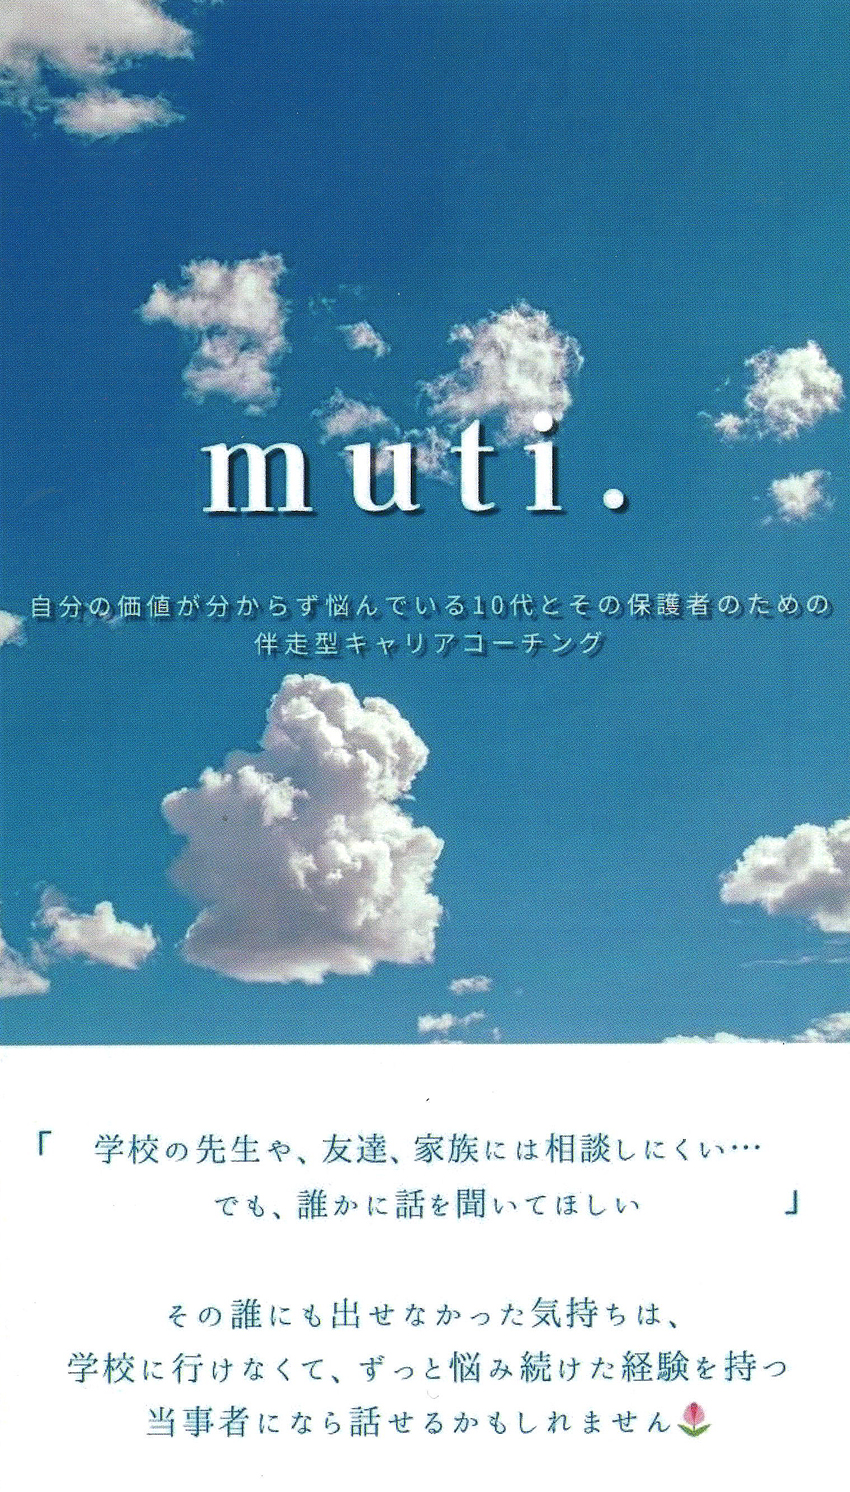 永谷様が運営されている「muti.」のリーフレットをいただきました